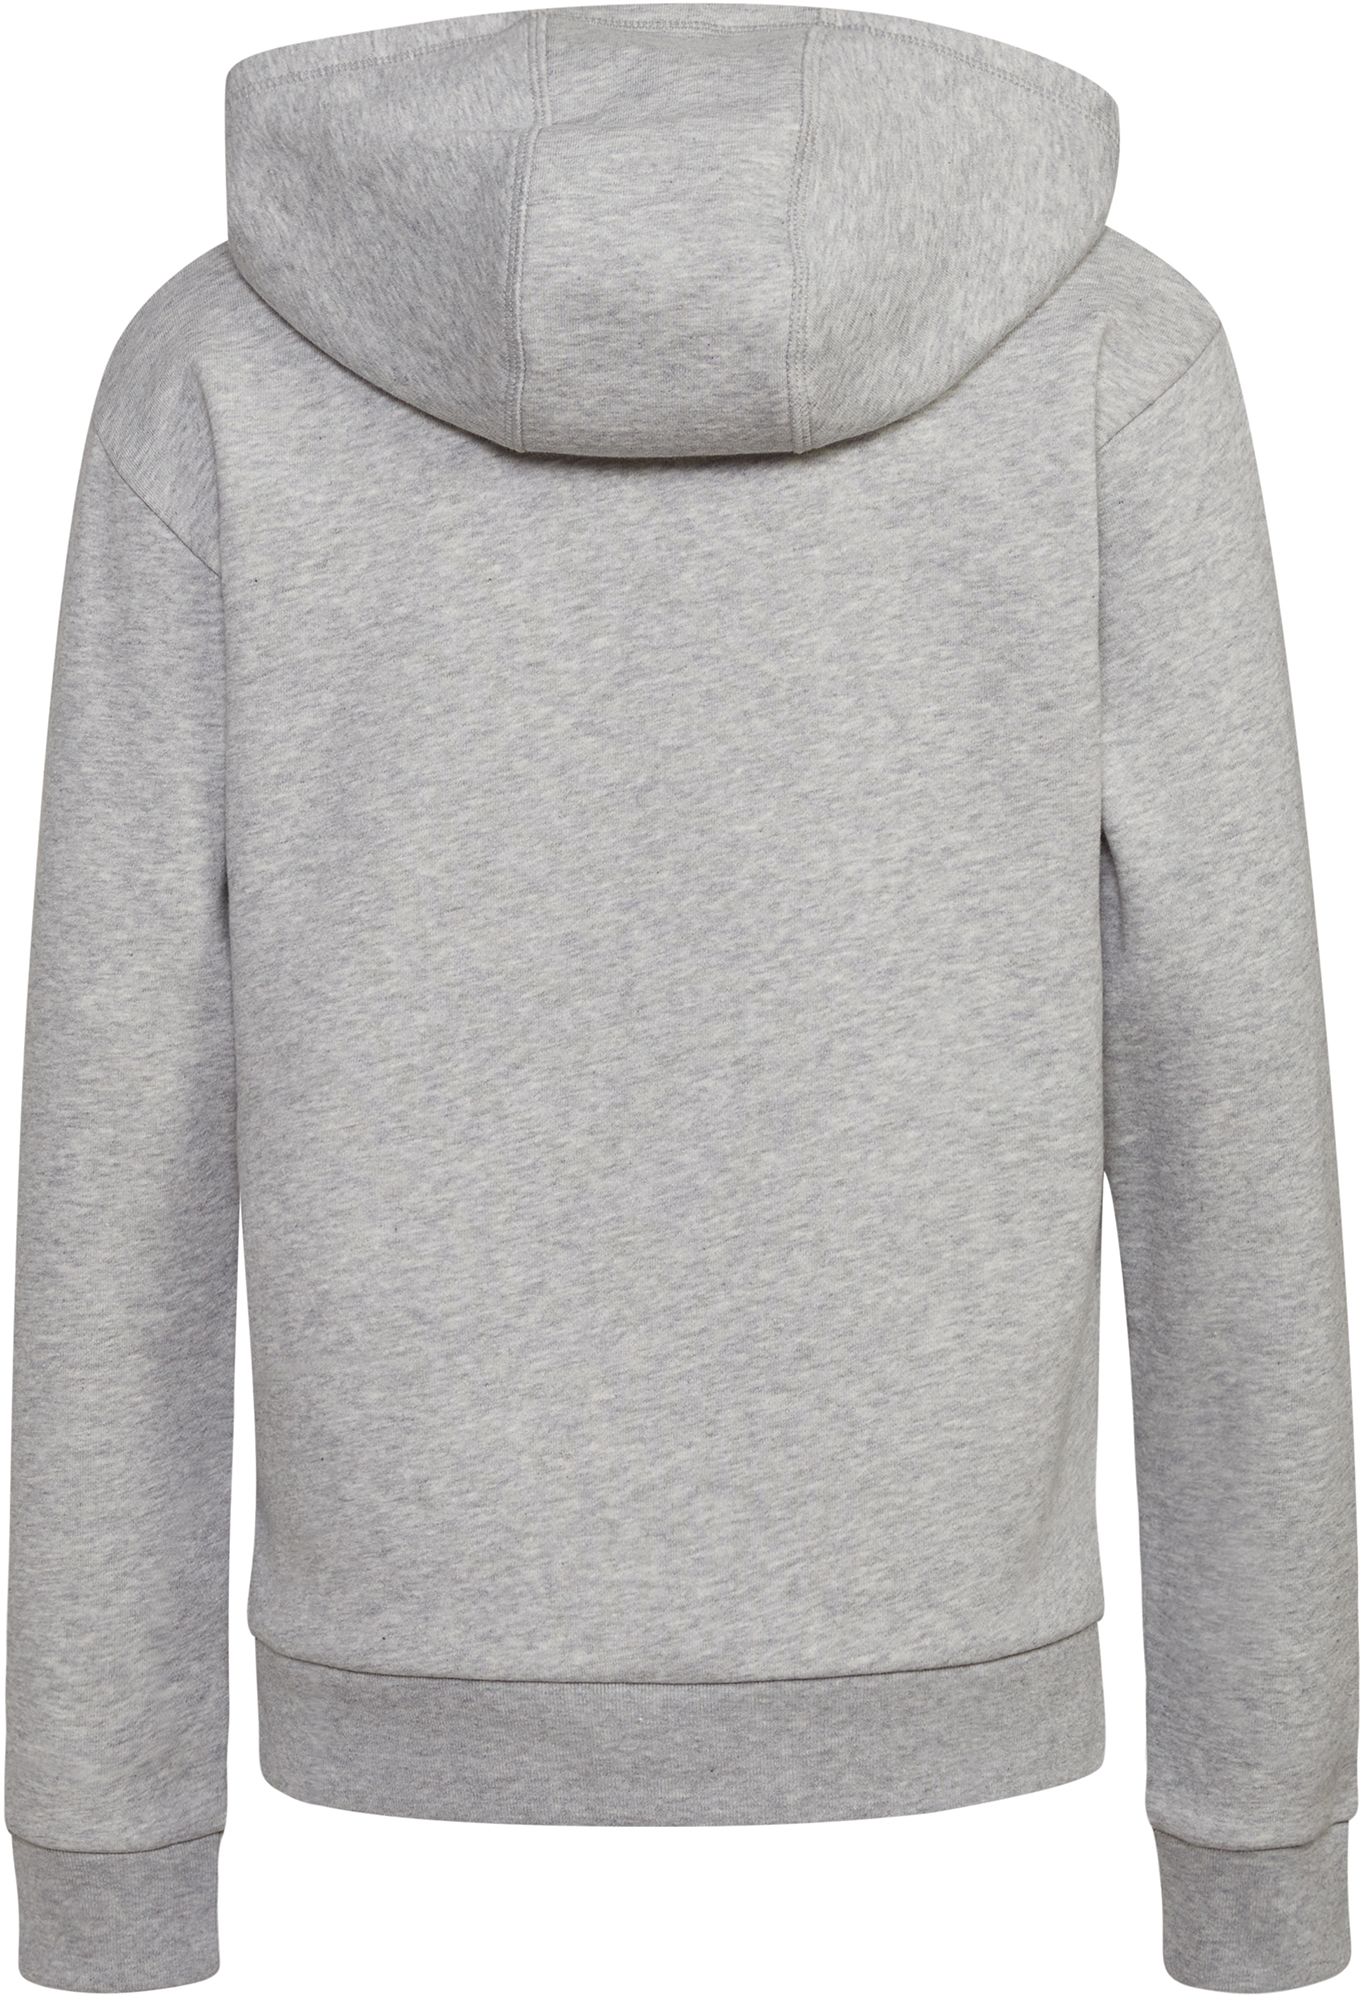 Adidas Boys' Long Sleeve Essential Fleece Hoodie Pullover